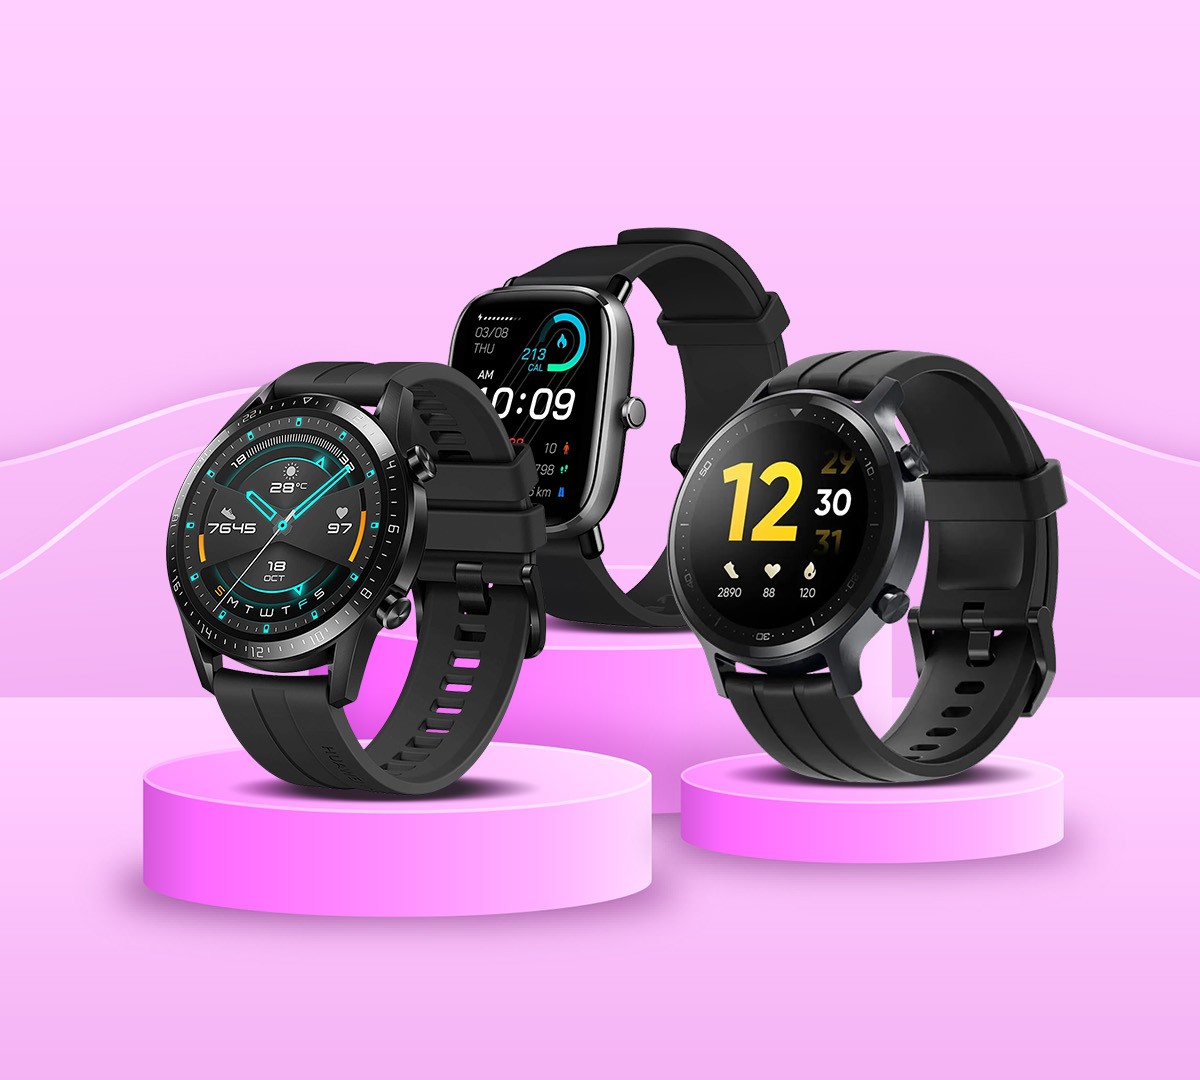 Melhor smartwatch até R$ 1000 para comprar